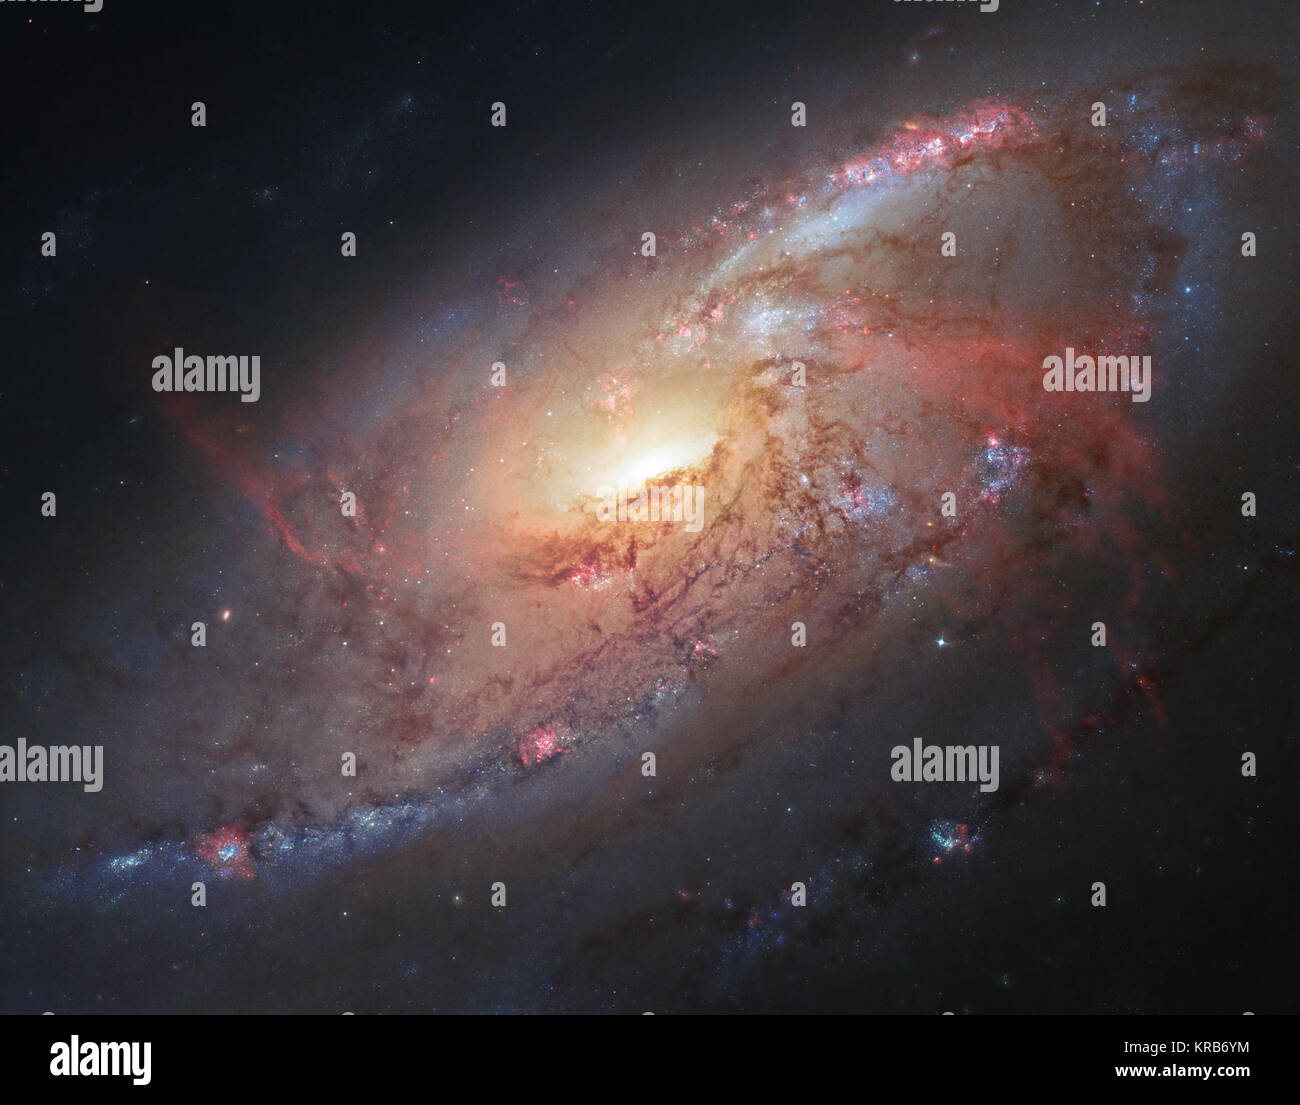 Questa immagine combina le osservazioni di Hubble di M 106 con ulteriori informazioni acquisite dagli astronomi dilettanti Robert Gendler e Jay GaBany. Gendler combinati dati di Hubble con proprie osservazioni per produrre questa splendida immagine di colore. M 106 è relativamente vicino a galassia a spirale, un po' più di venti milioni di anni luce di distanza. Messier 106 visibile e composito a infrarossi Foto Stock